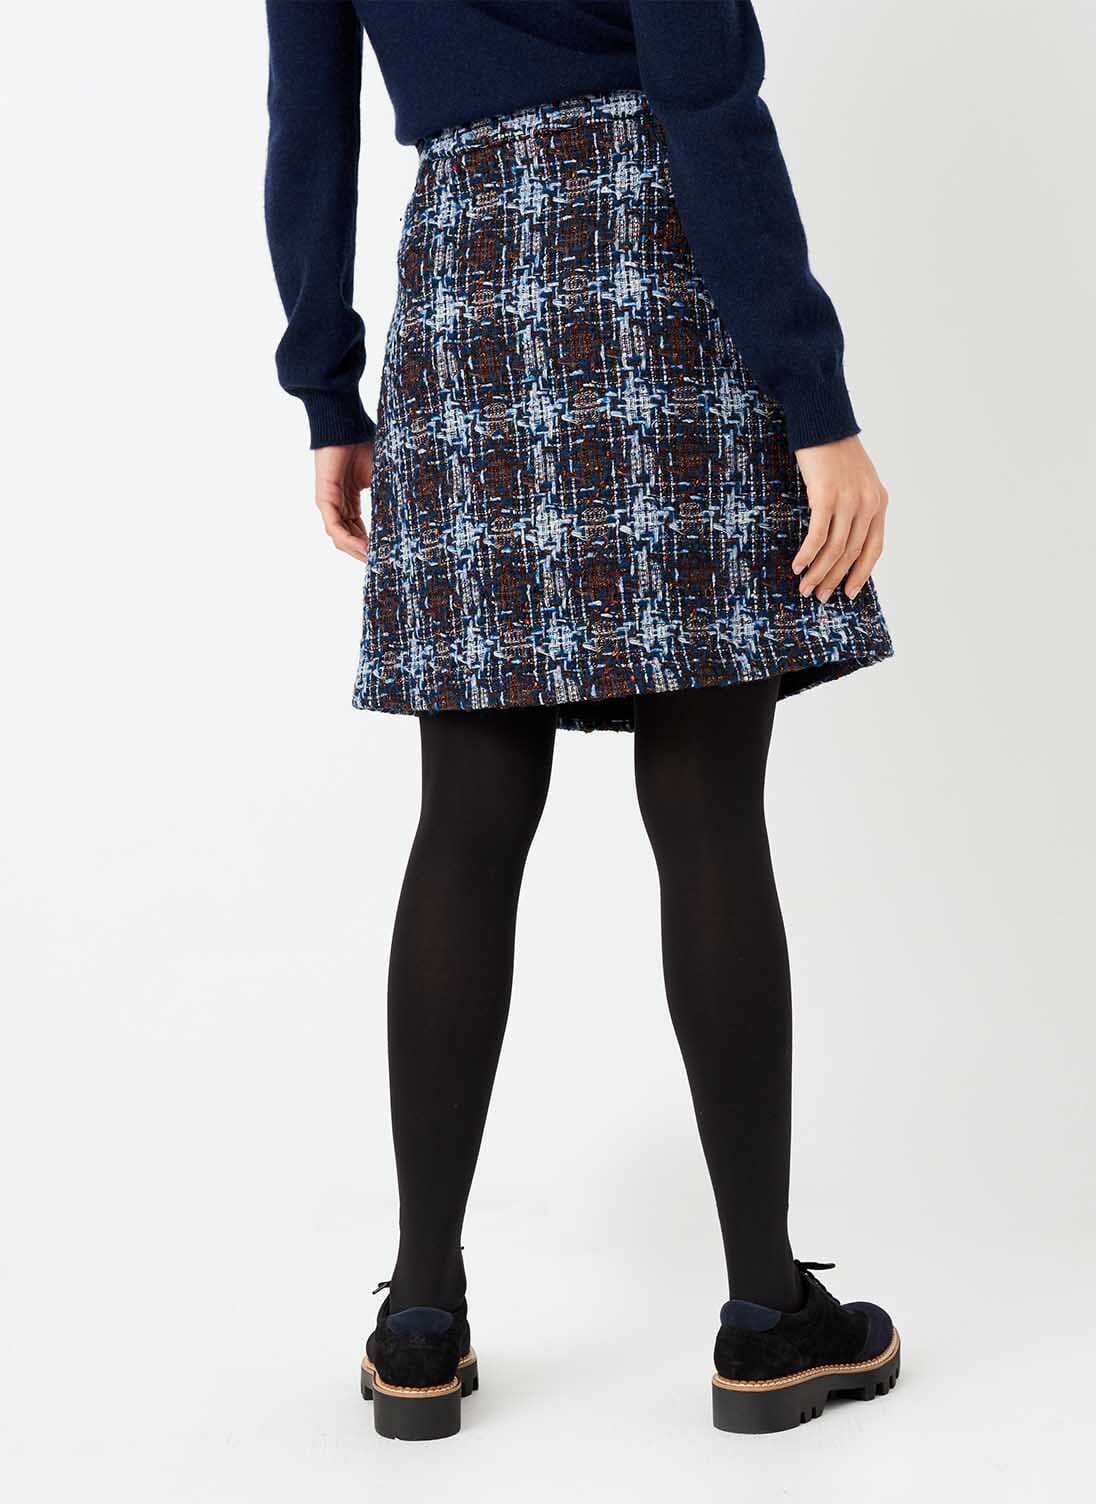 Scottish Tweed Skirt | Women's Skirts | Brora UK